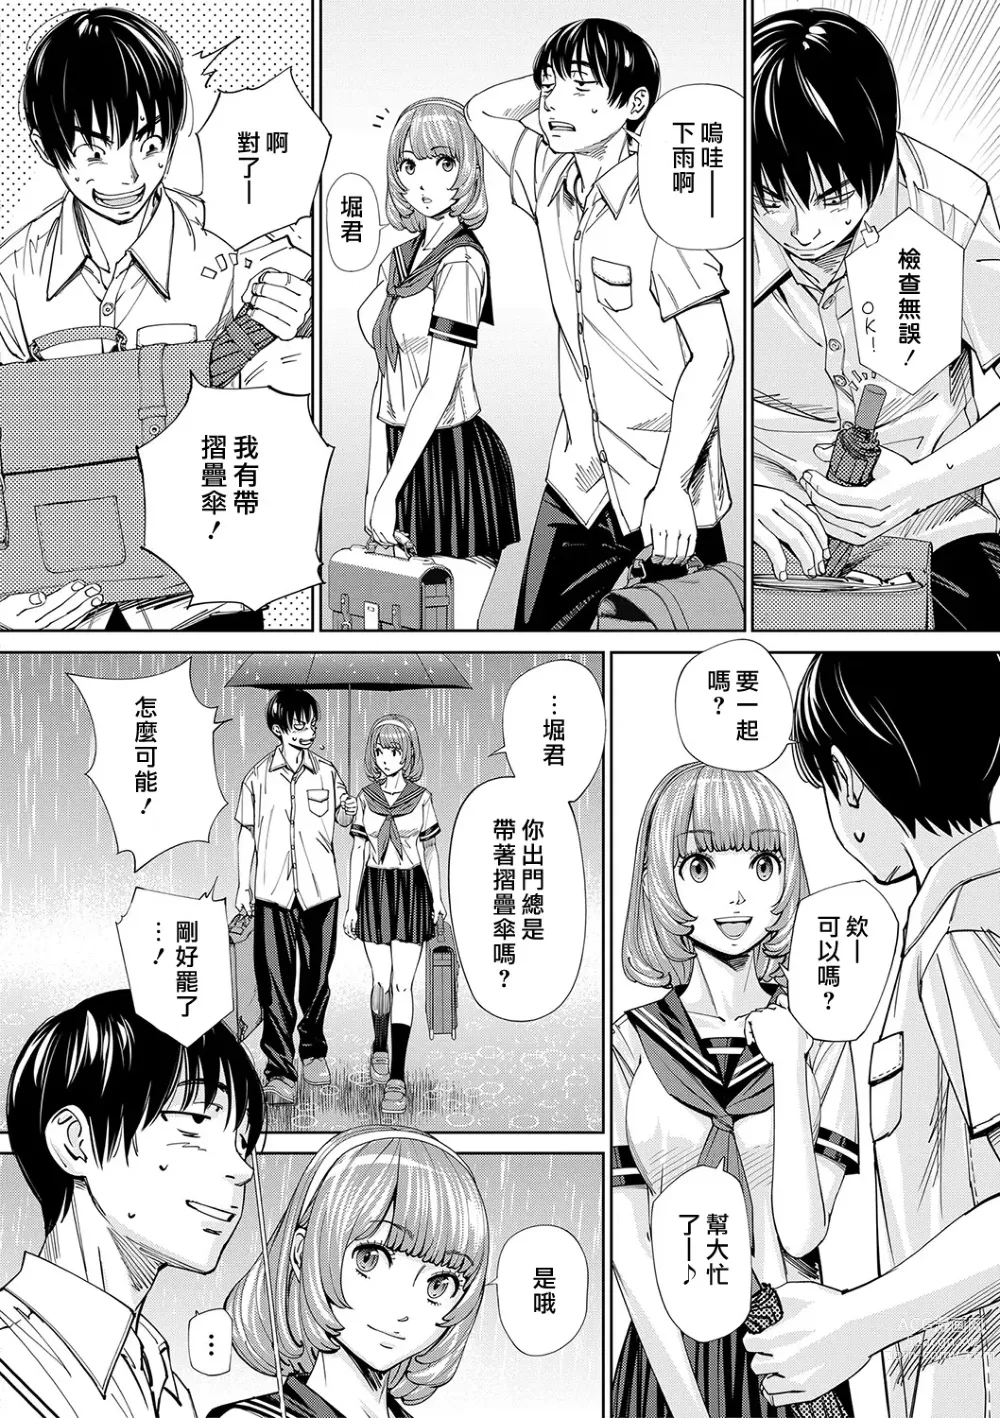 Page 13 of manga Chitose